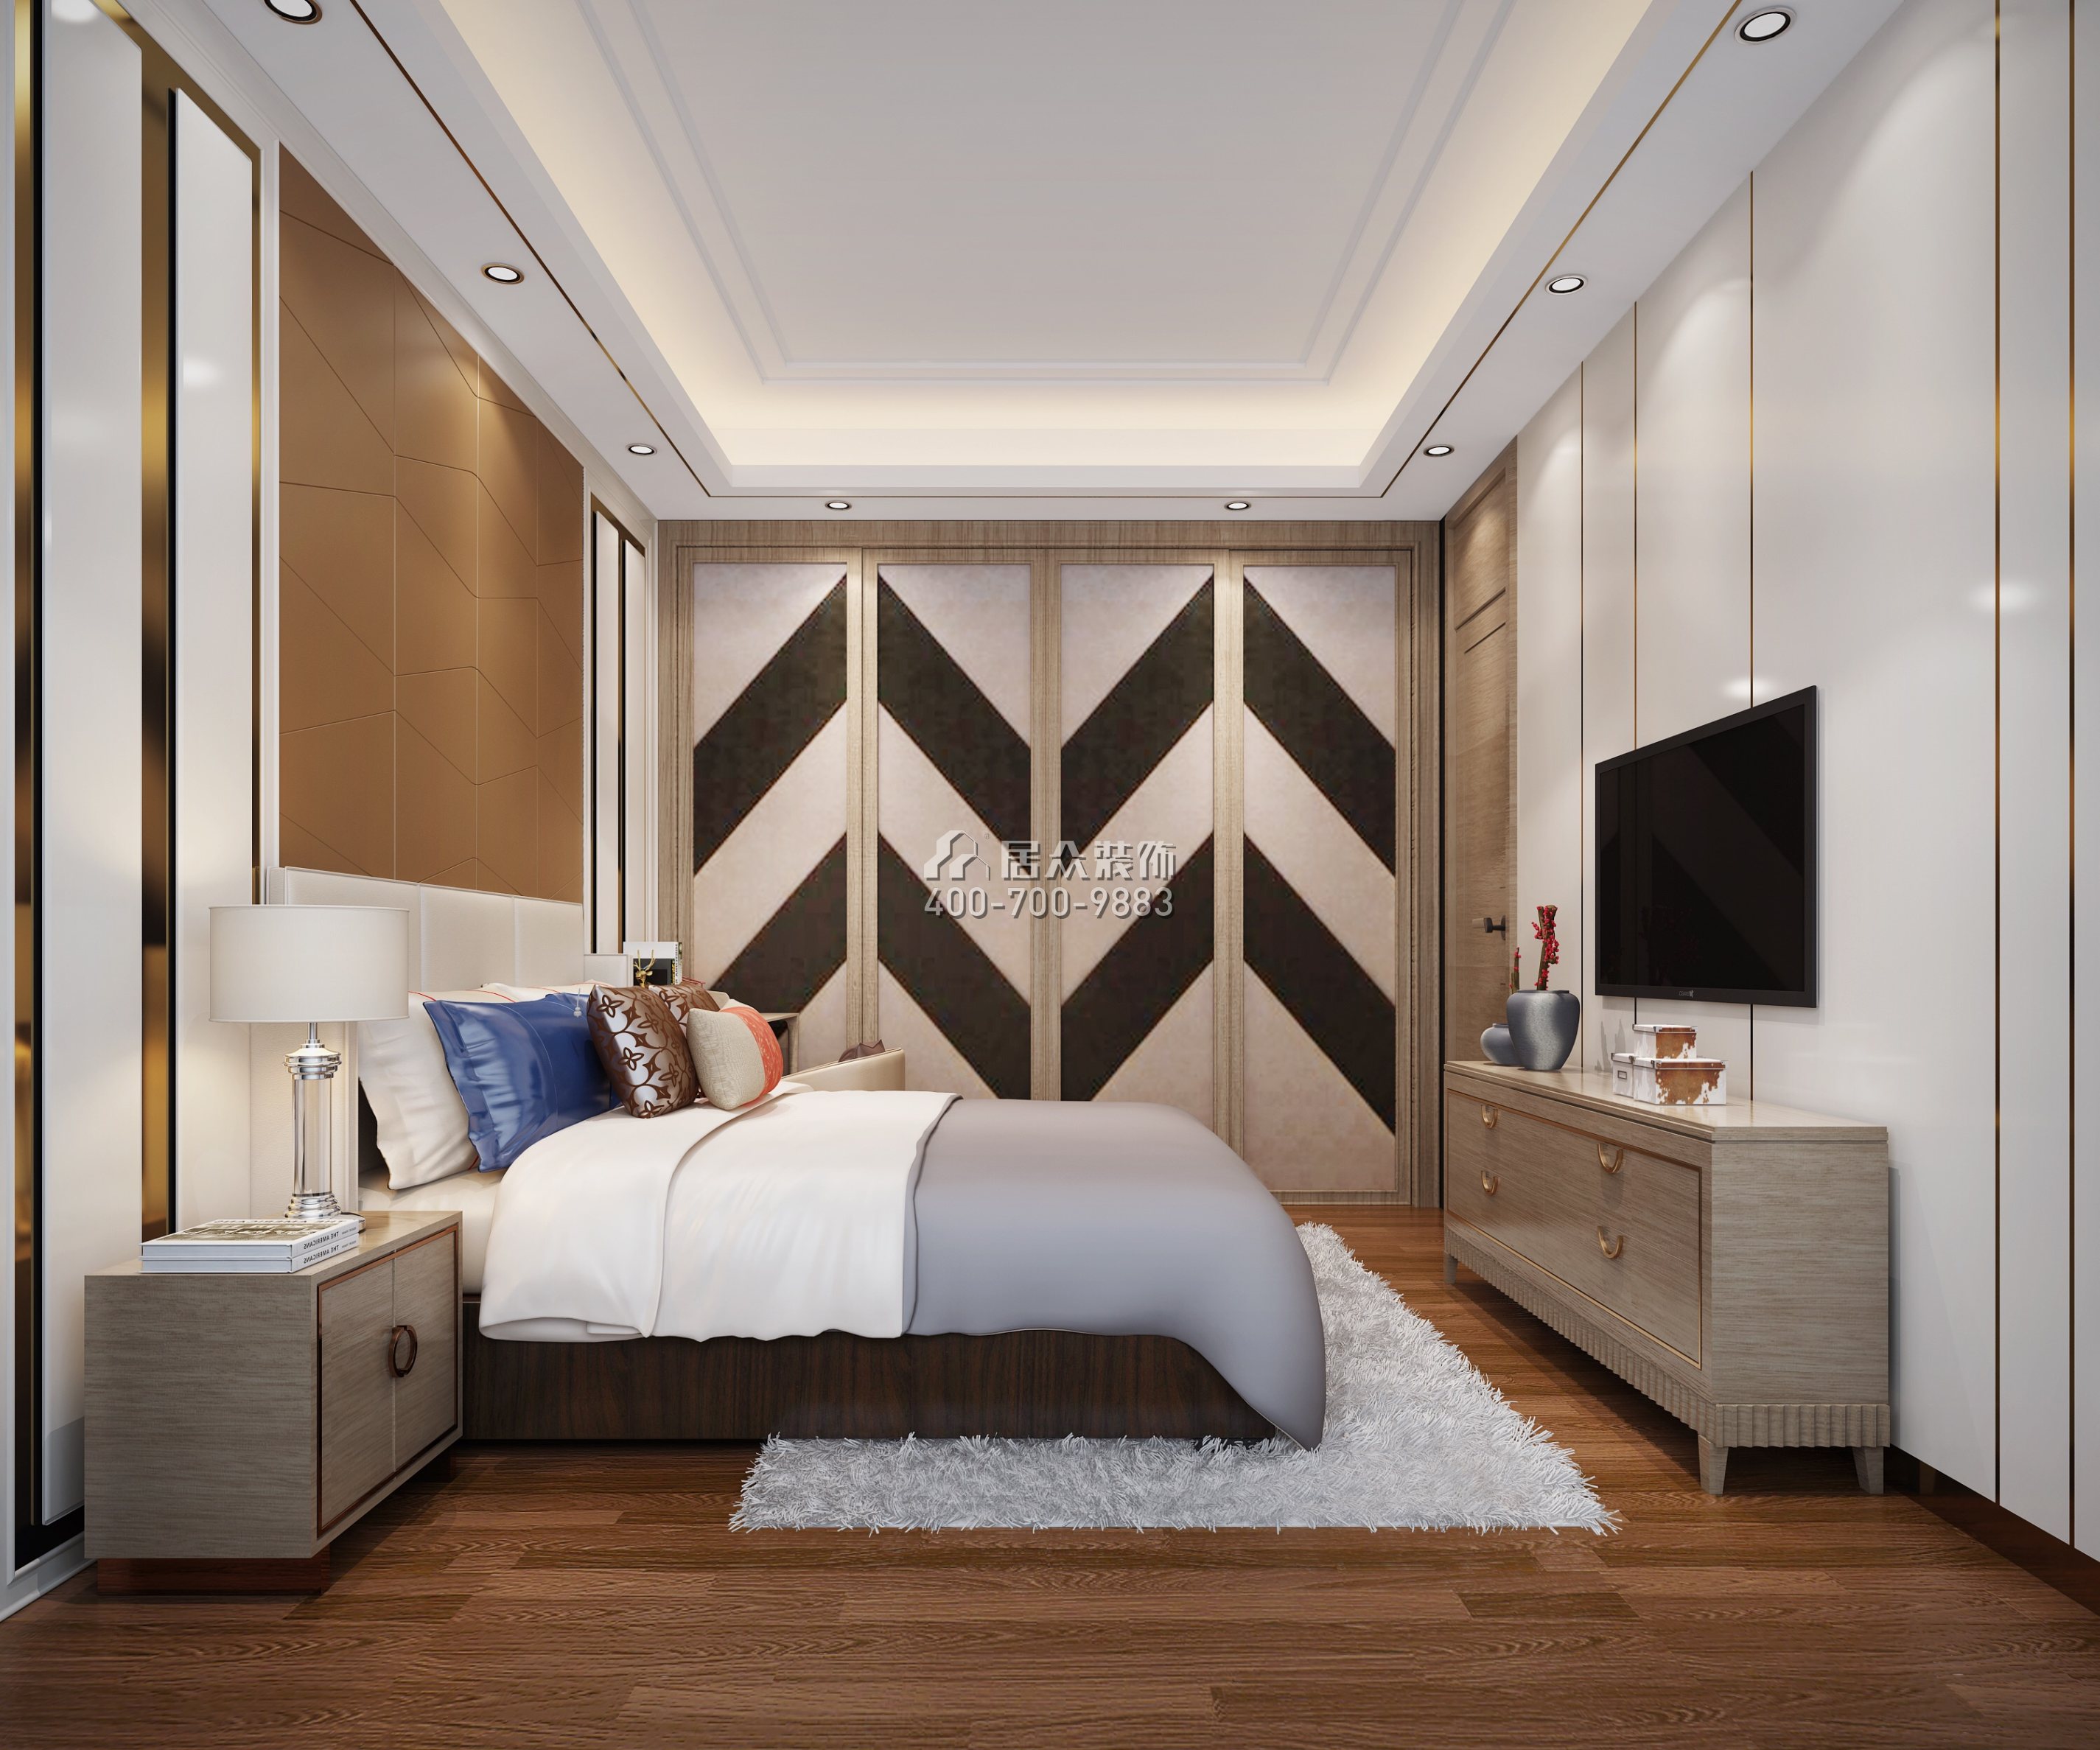 御龙居379平方米混搭风格复式户型卧室装修效果图